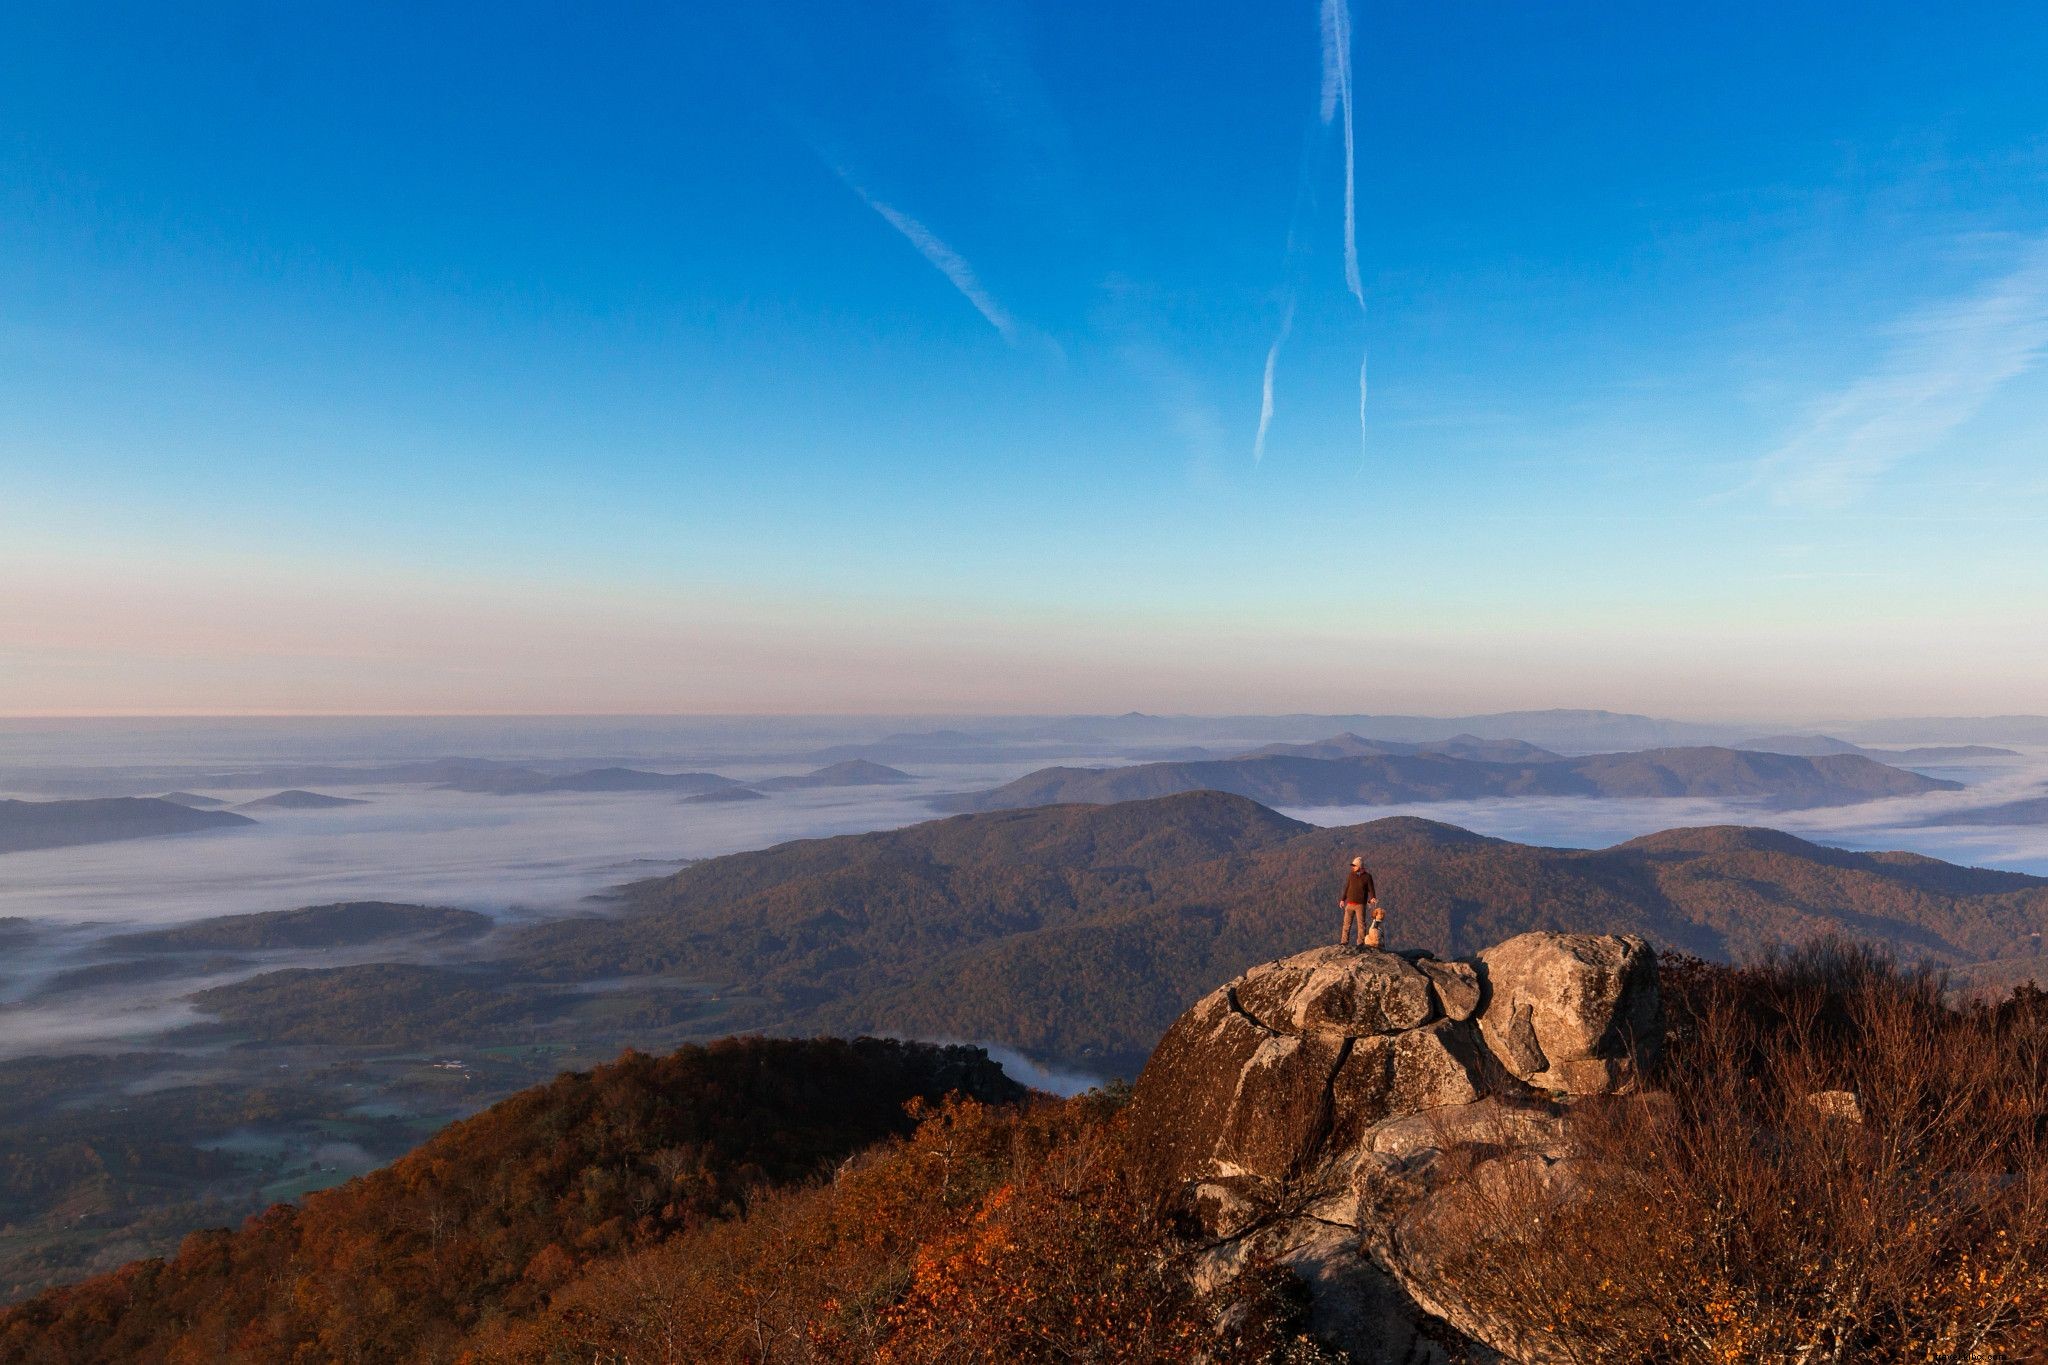 10 lugares espetaculares para ver a folhagem de outono na Virgínia que não são o Parque Nacional de Shenandoah 